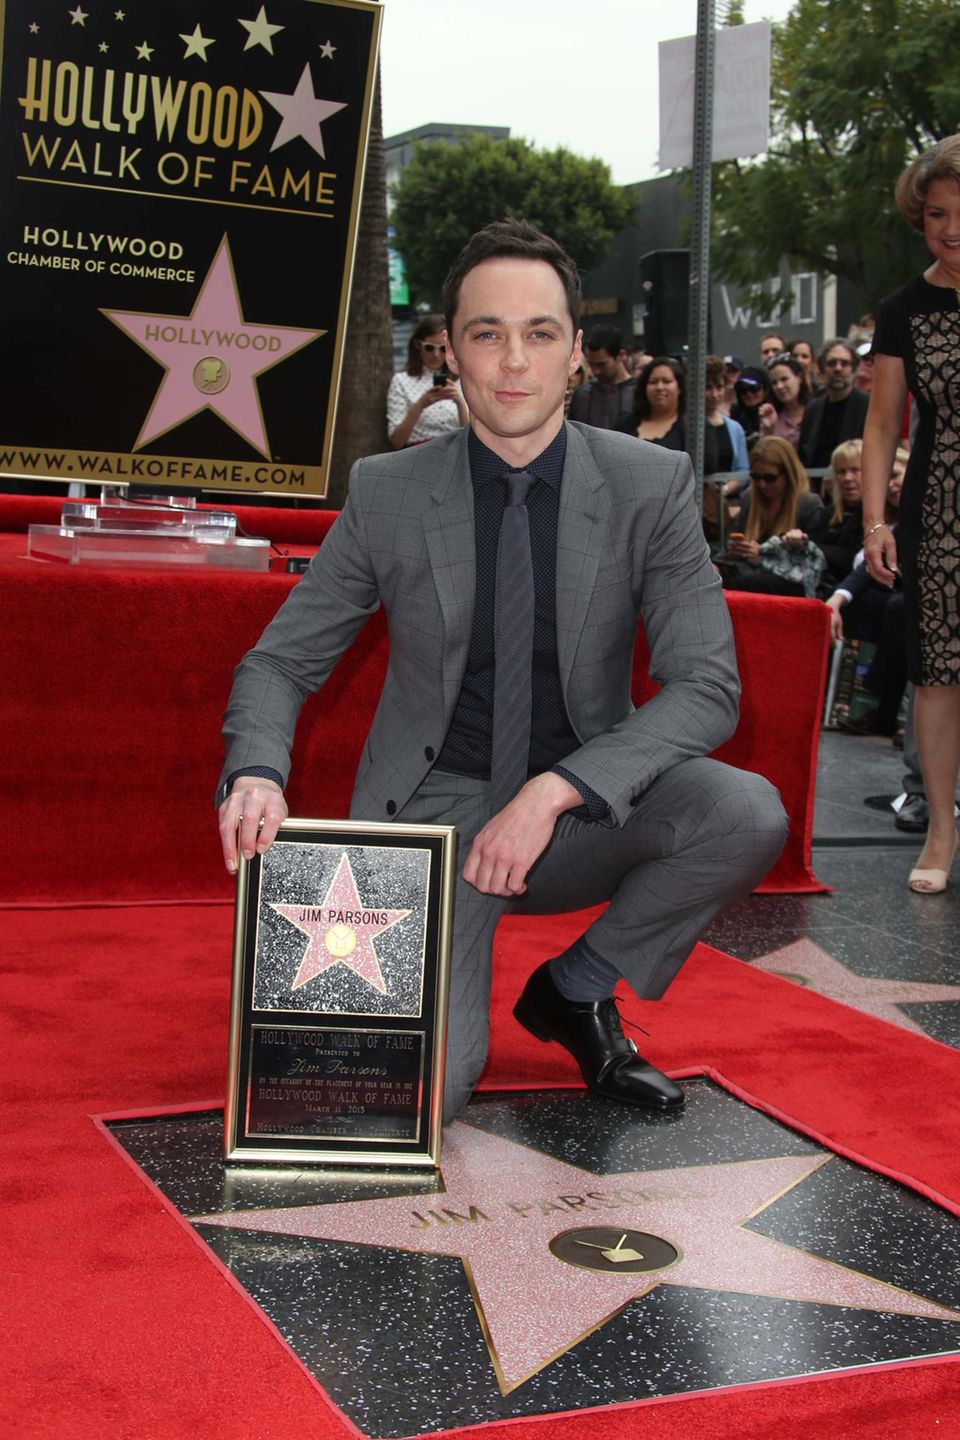 11. März 2015: Der Hollywood Boulevard ist um einen Star reicher! Der "Big Bang Theory"-Darsteller Jim Parsons erhält seinen eigenen Stern auf dem "Walk of Fame". Als "Sheldon Cooper" hat er sicher nichts anderes erwartet, als Jim Parsons begeht er diese besondere Ehrung mit seiner Familie und seinen Kollegen.